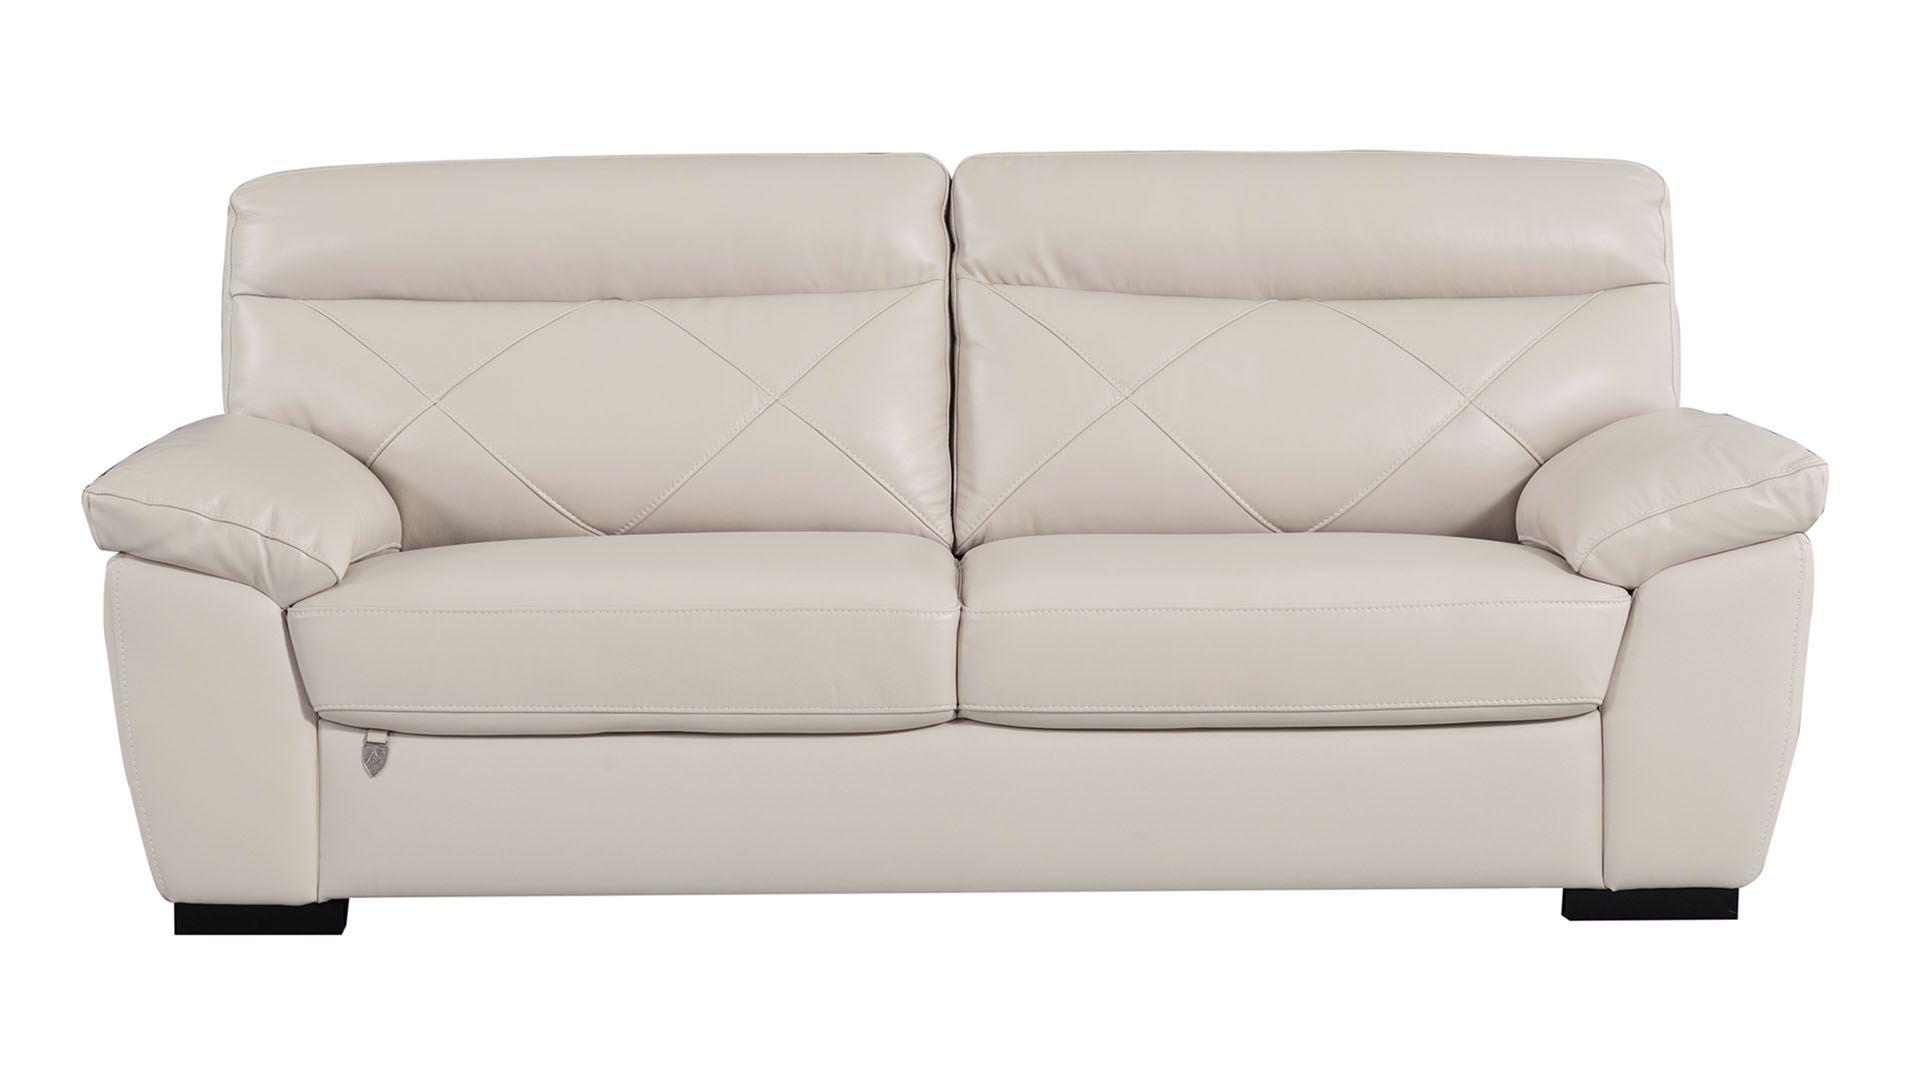 Contemporary, Modern Sofa EK081-LG-SF EK081-LG-SF in Light Gray Italian Leather